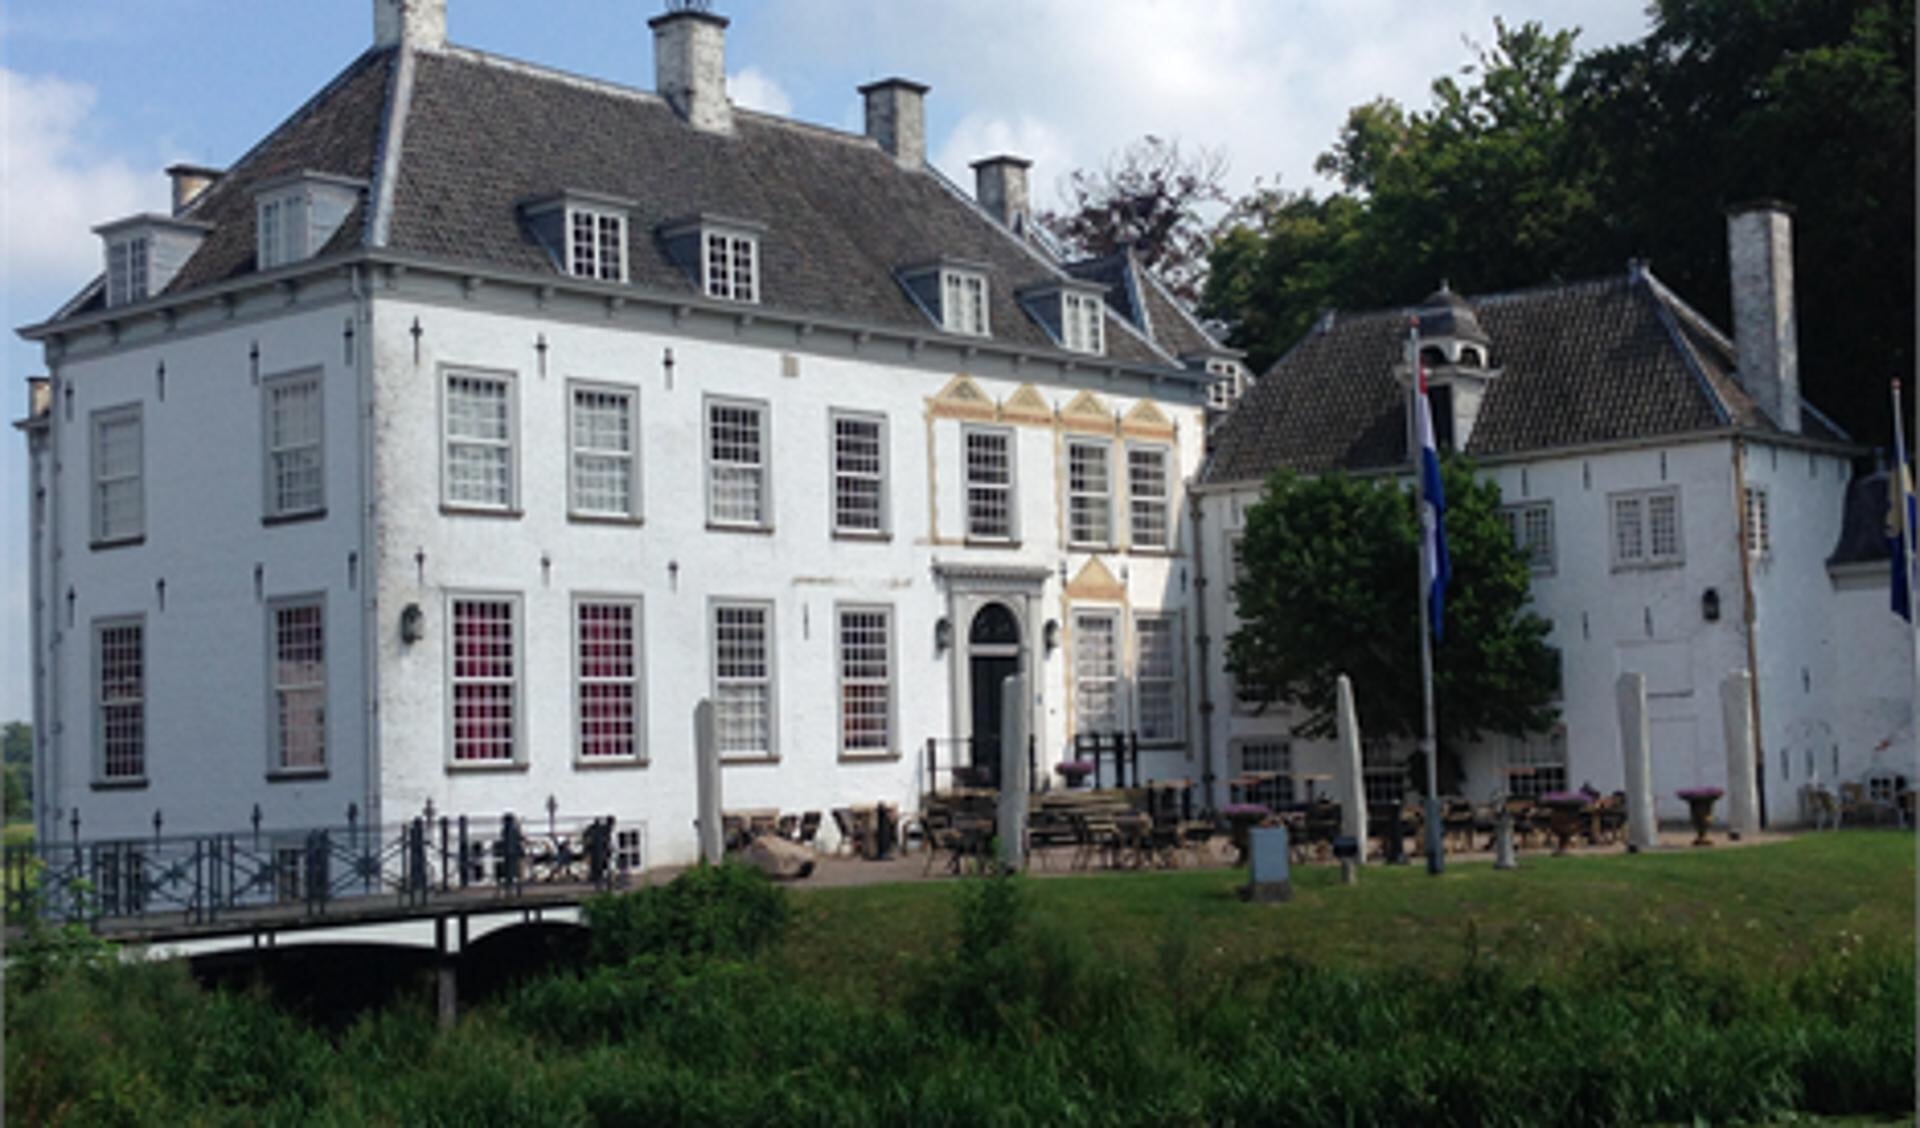 Huis 't Velde is een statig wit landhuis ten oosten van Warnsveld, dat sinds 2005 deel uitmaakt van de gemeente Zutphen.